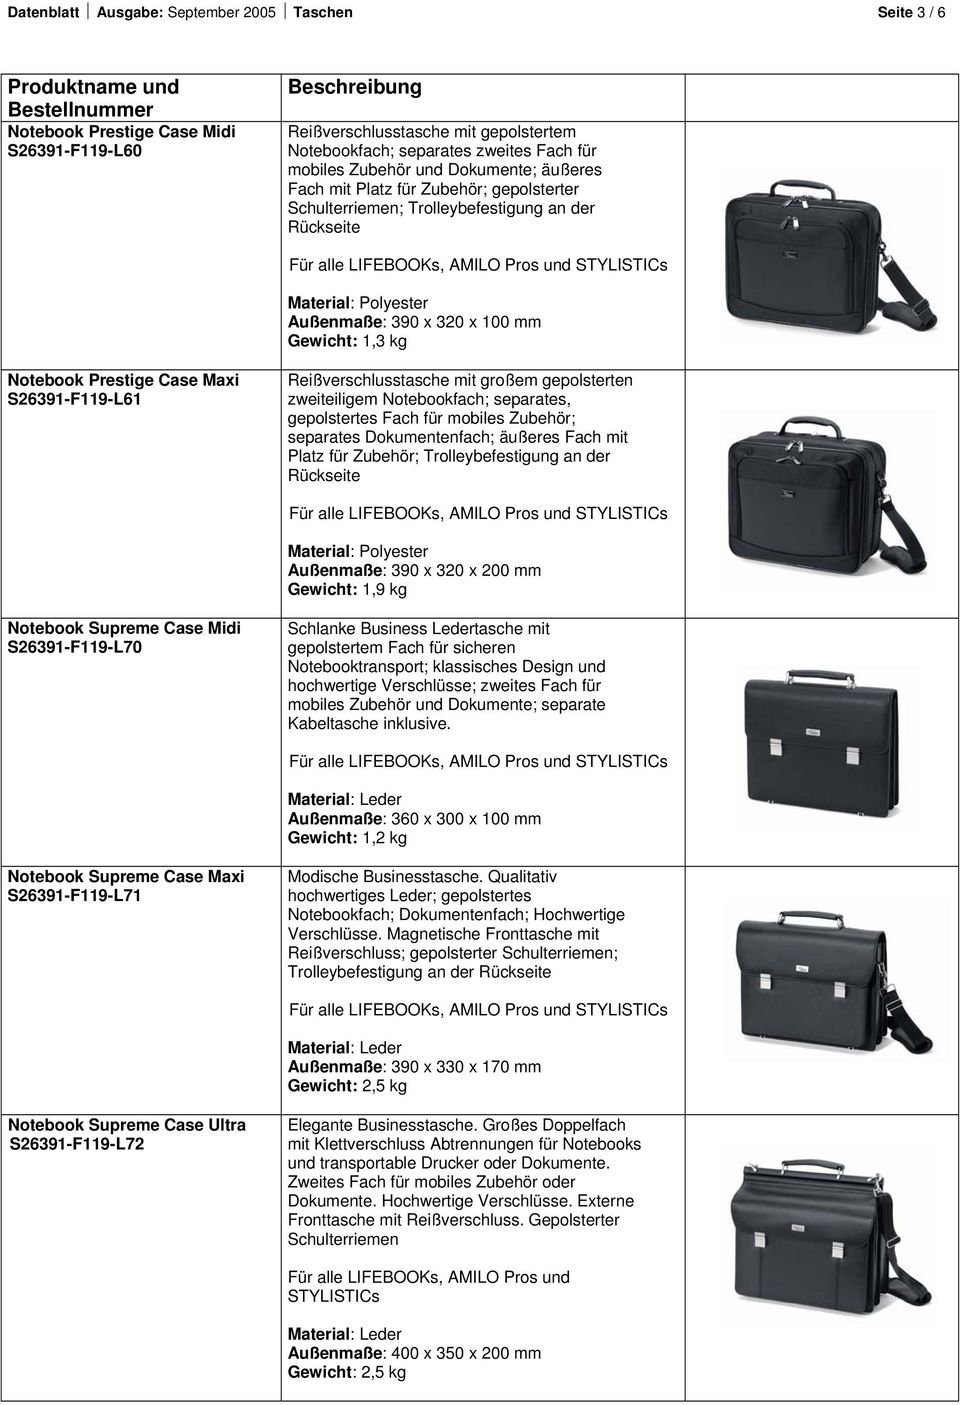 Notebook Prestige Case Maxi S26391-F119-L61 Reißverschlusstasche mit großem gepolsterten zweiteiligem Notebookfach; separates, gepolstertes Fach für mobiles Zubehör; separates Dokumentenfach; äußeres